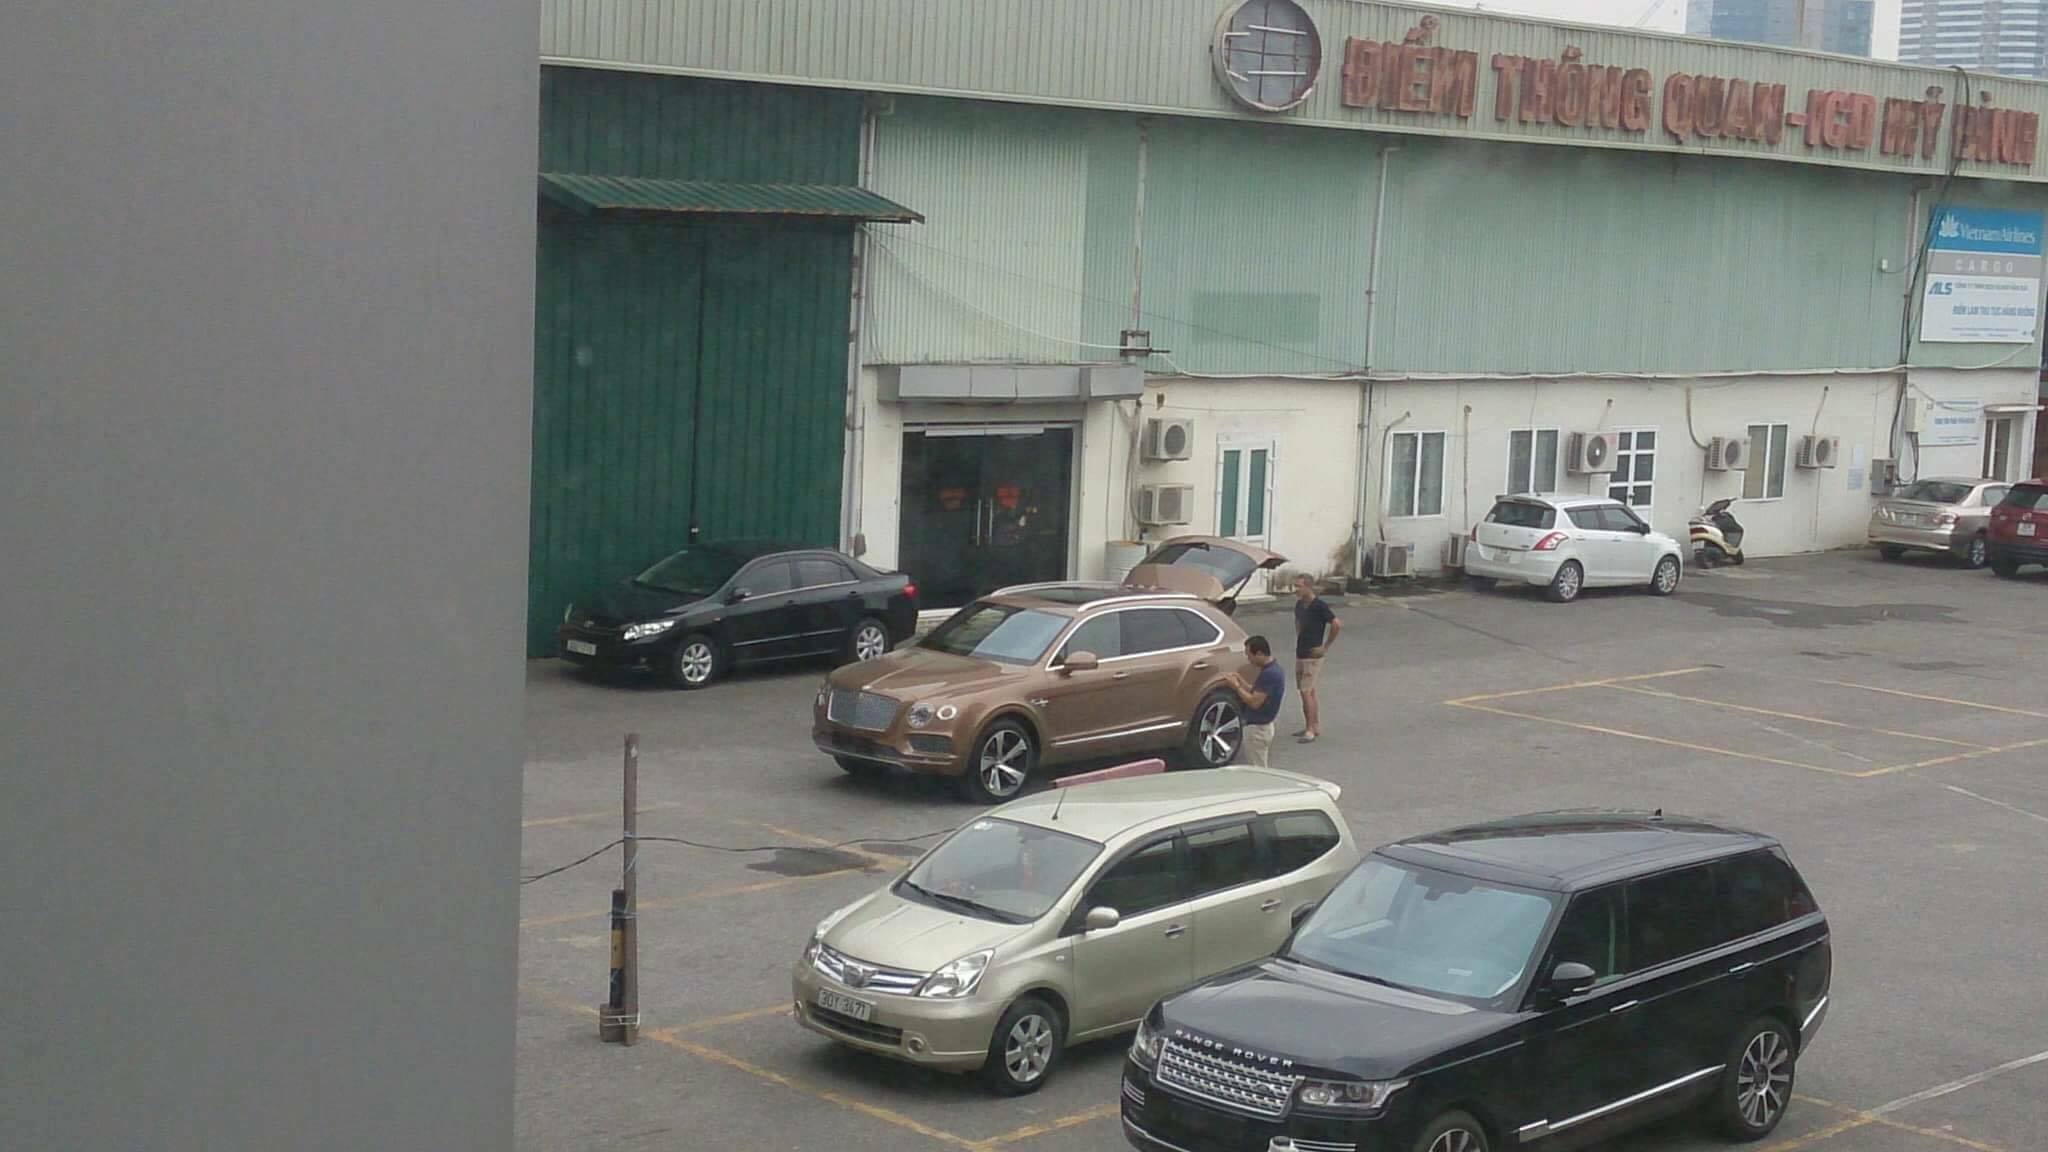 
Sáng nay, 8/6, một chiếc SUV siêu sang Bentley Bentayga đã bất ngờ xuất hiện tại Hà Nội. Đây là mẫu SUV siêu sang nhanh nhất thế giới và là chiếc đầu tiên tại Việt Nam. Theo tìm hiểu của phóng viên, xe thuộc sở hữu của một đại gia Hà Nội và được mua theo đường không chính hãng.
